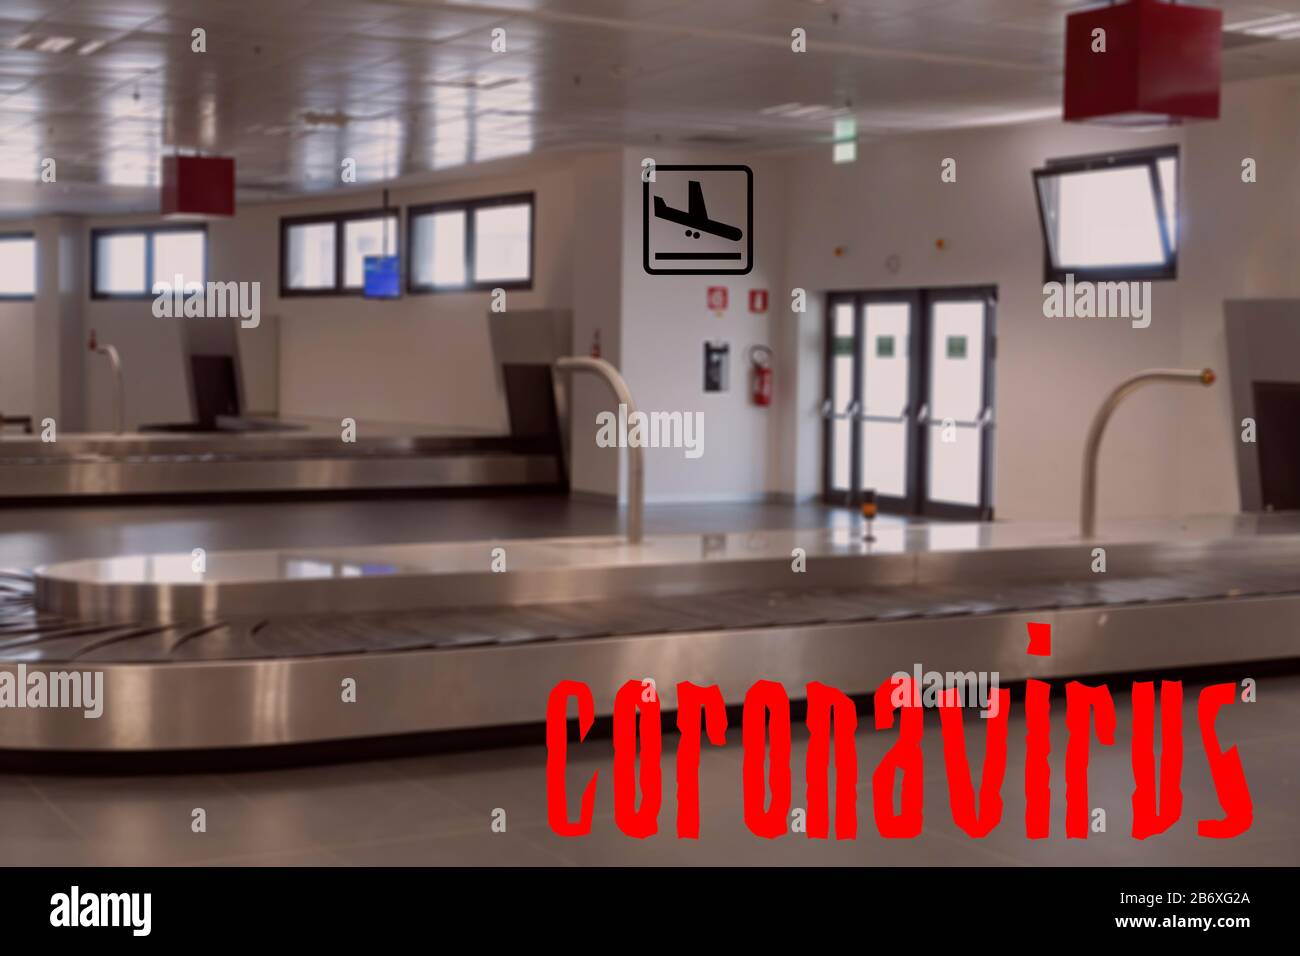 Airport vuota cintura bagagli COVID-19 mondo focolaio senza concetto di volo. Non c'è folla nell'area del carosello bagagli, con il titolo di coronavirus. Foto Stock